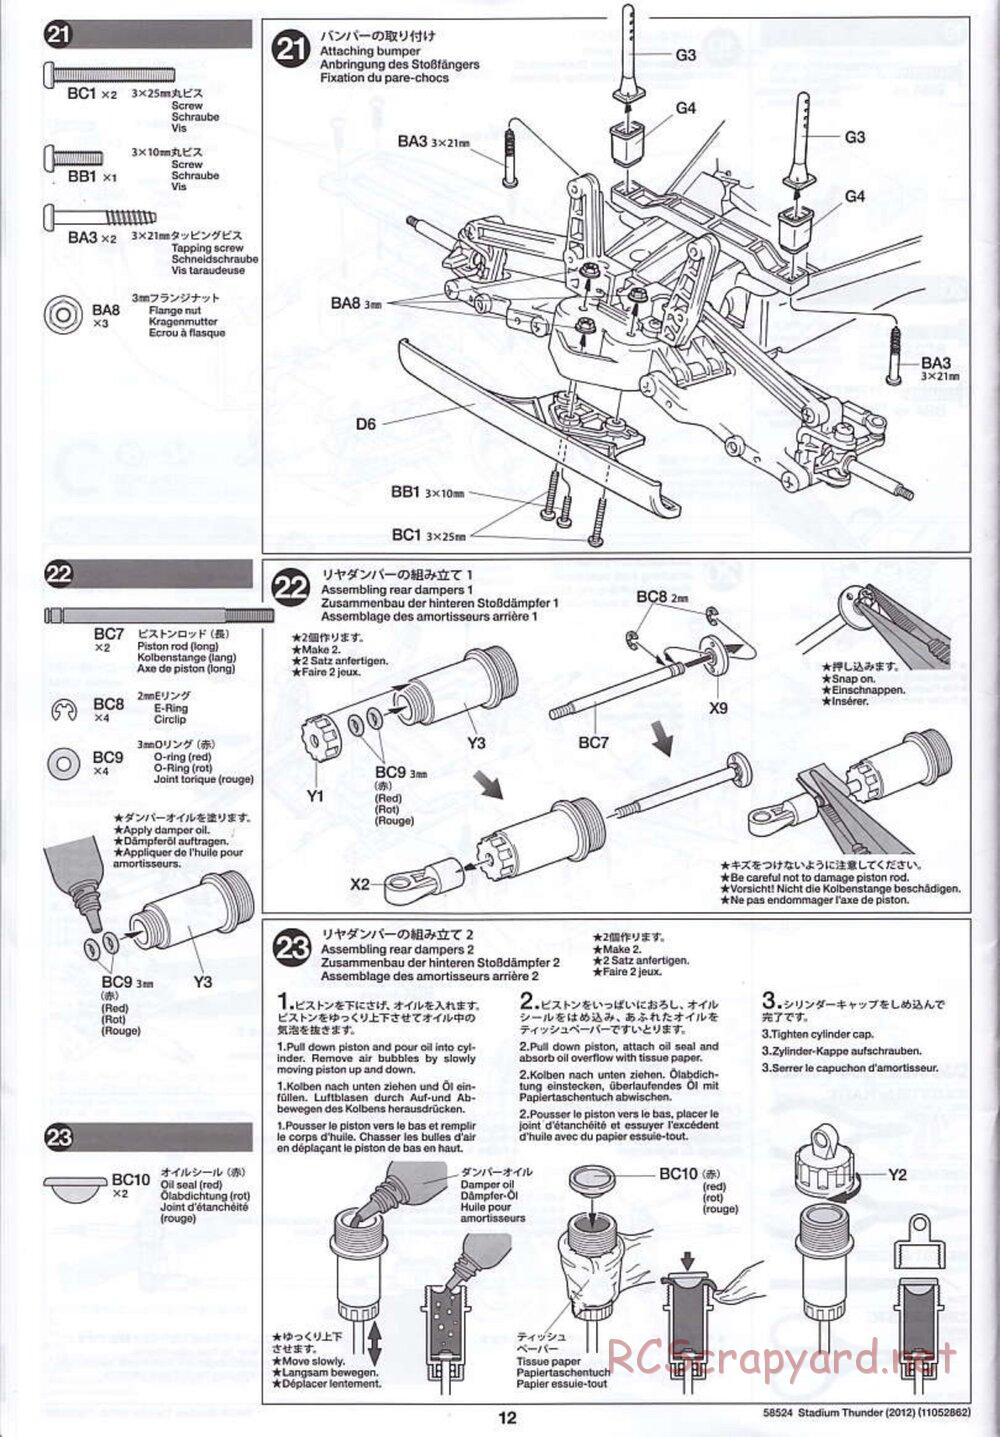 Tamiya - Stadium Thunder 2012 - FAL Chassis - Manual - Page 12